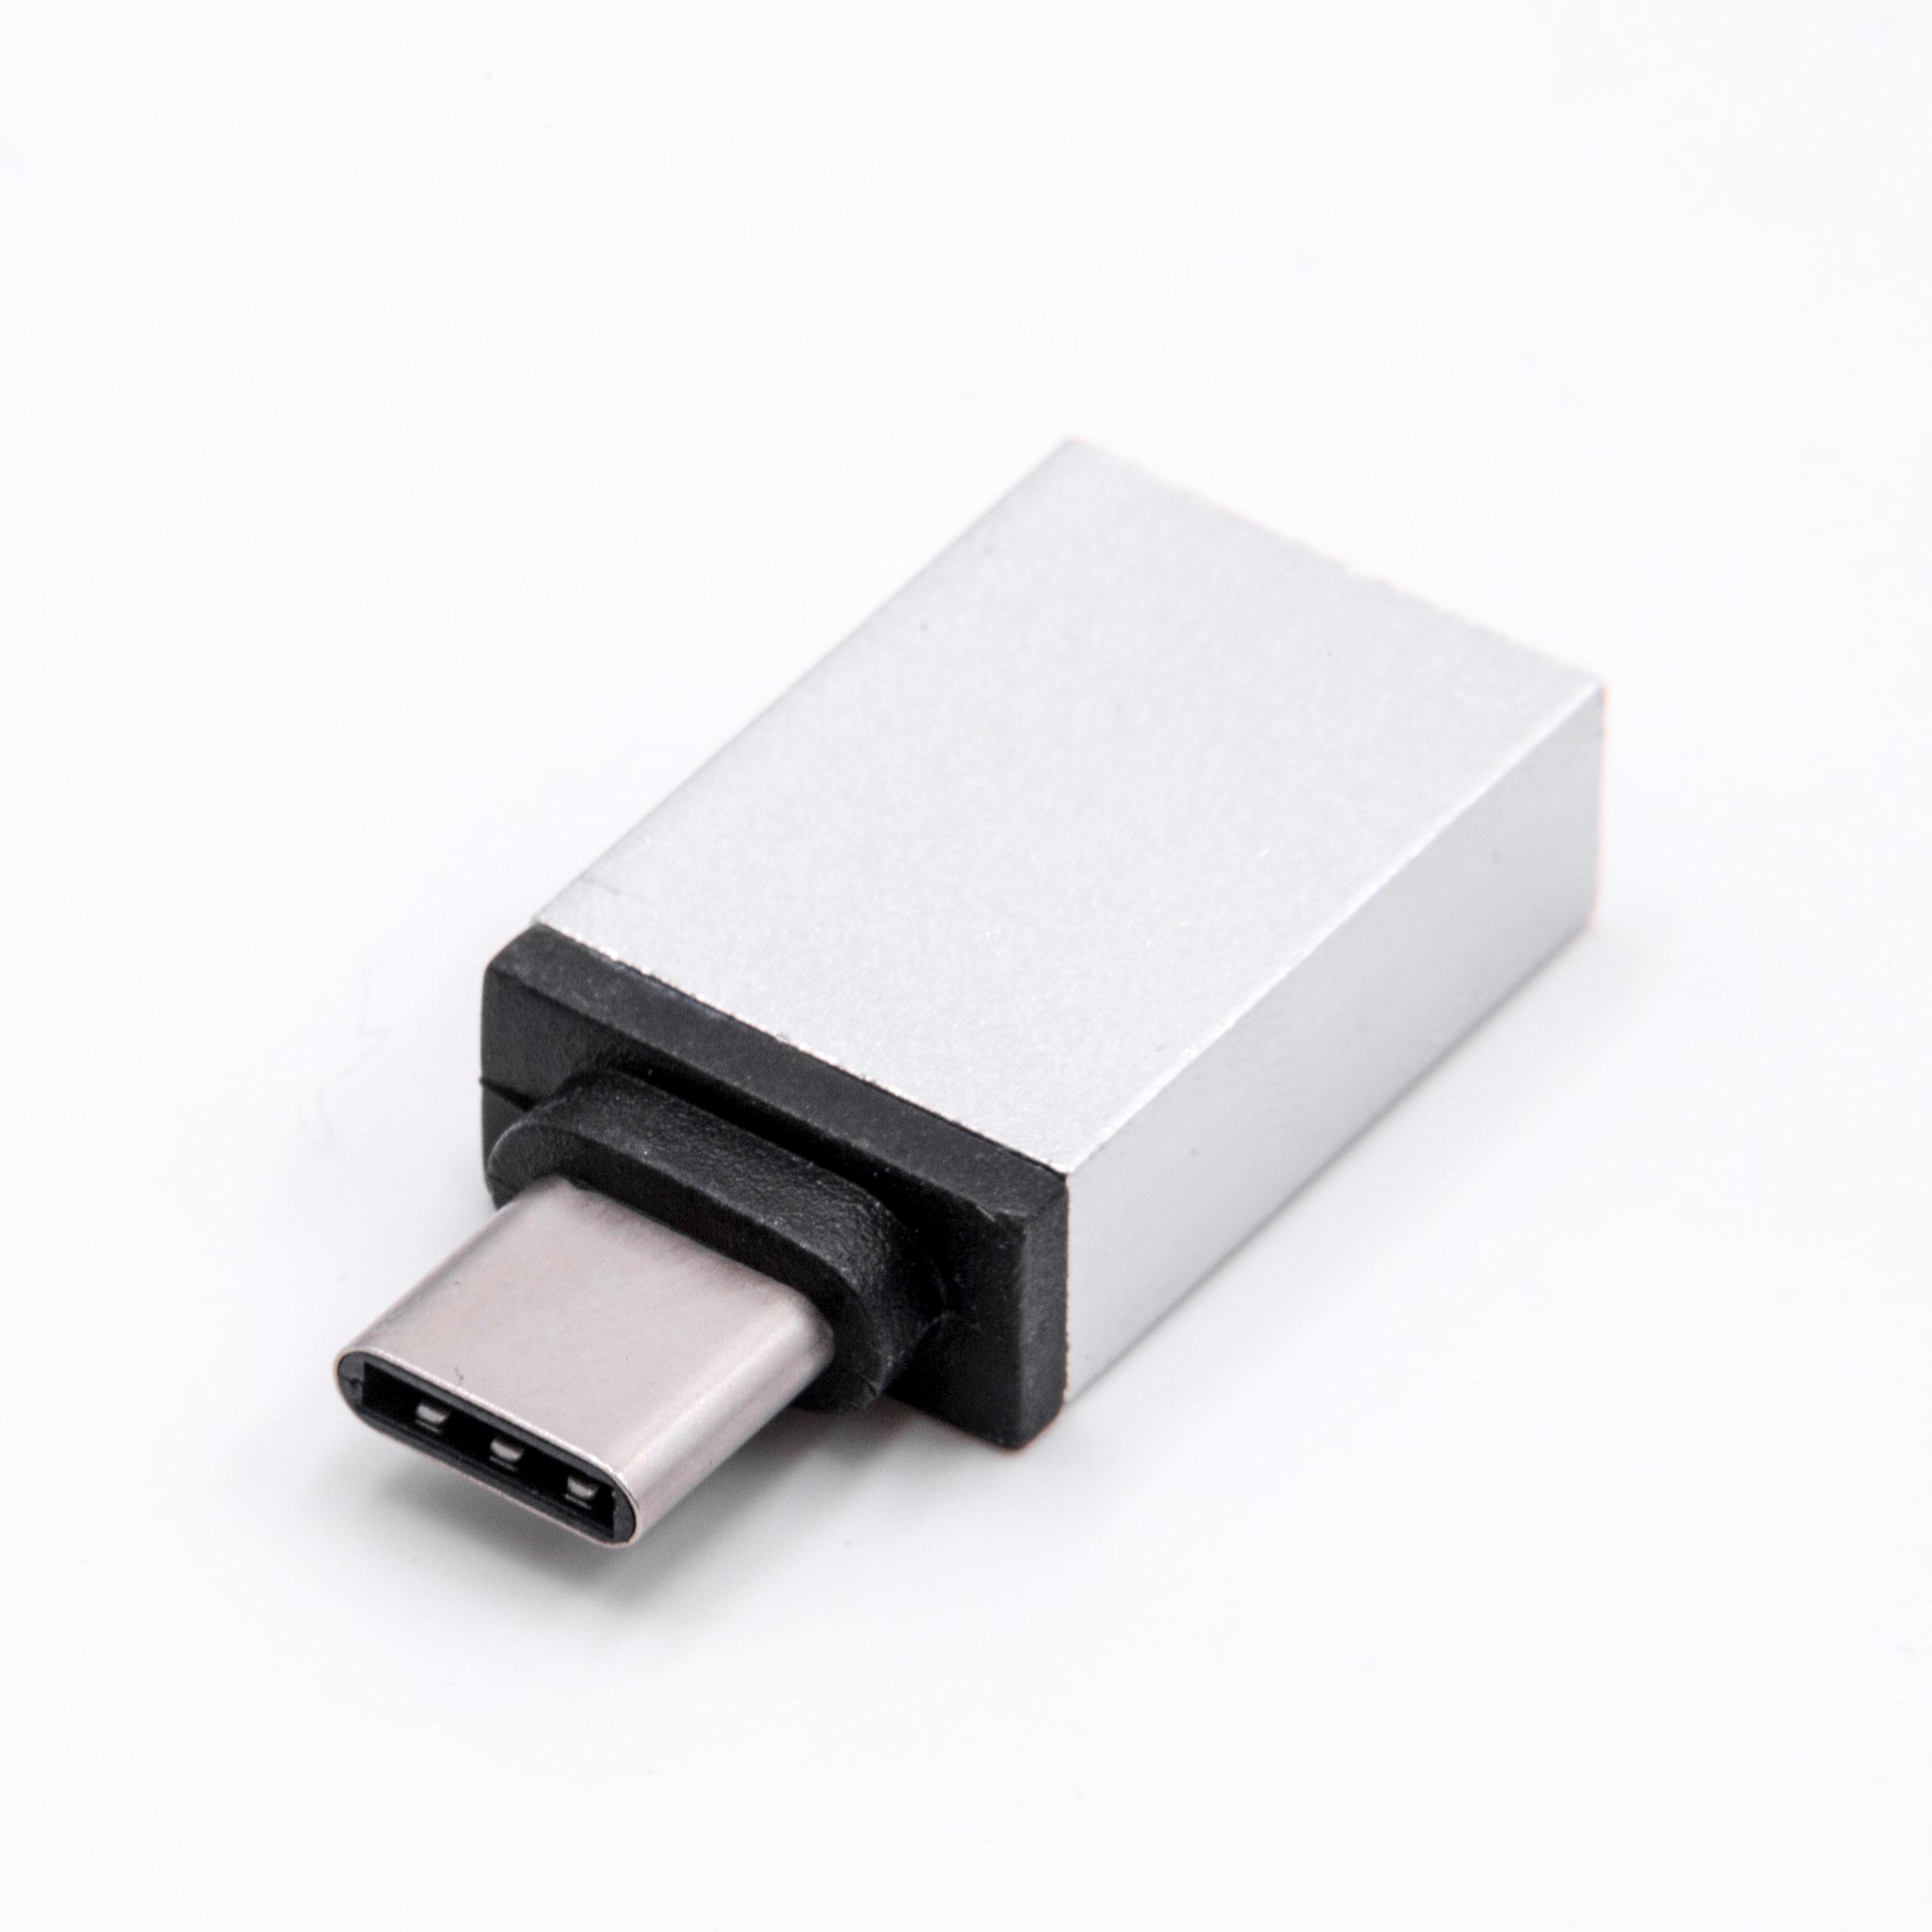 Adaptateur USB 3.1 Gen1 type C femelle vers USB A mâle monobloc au